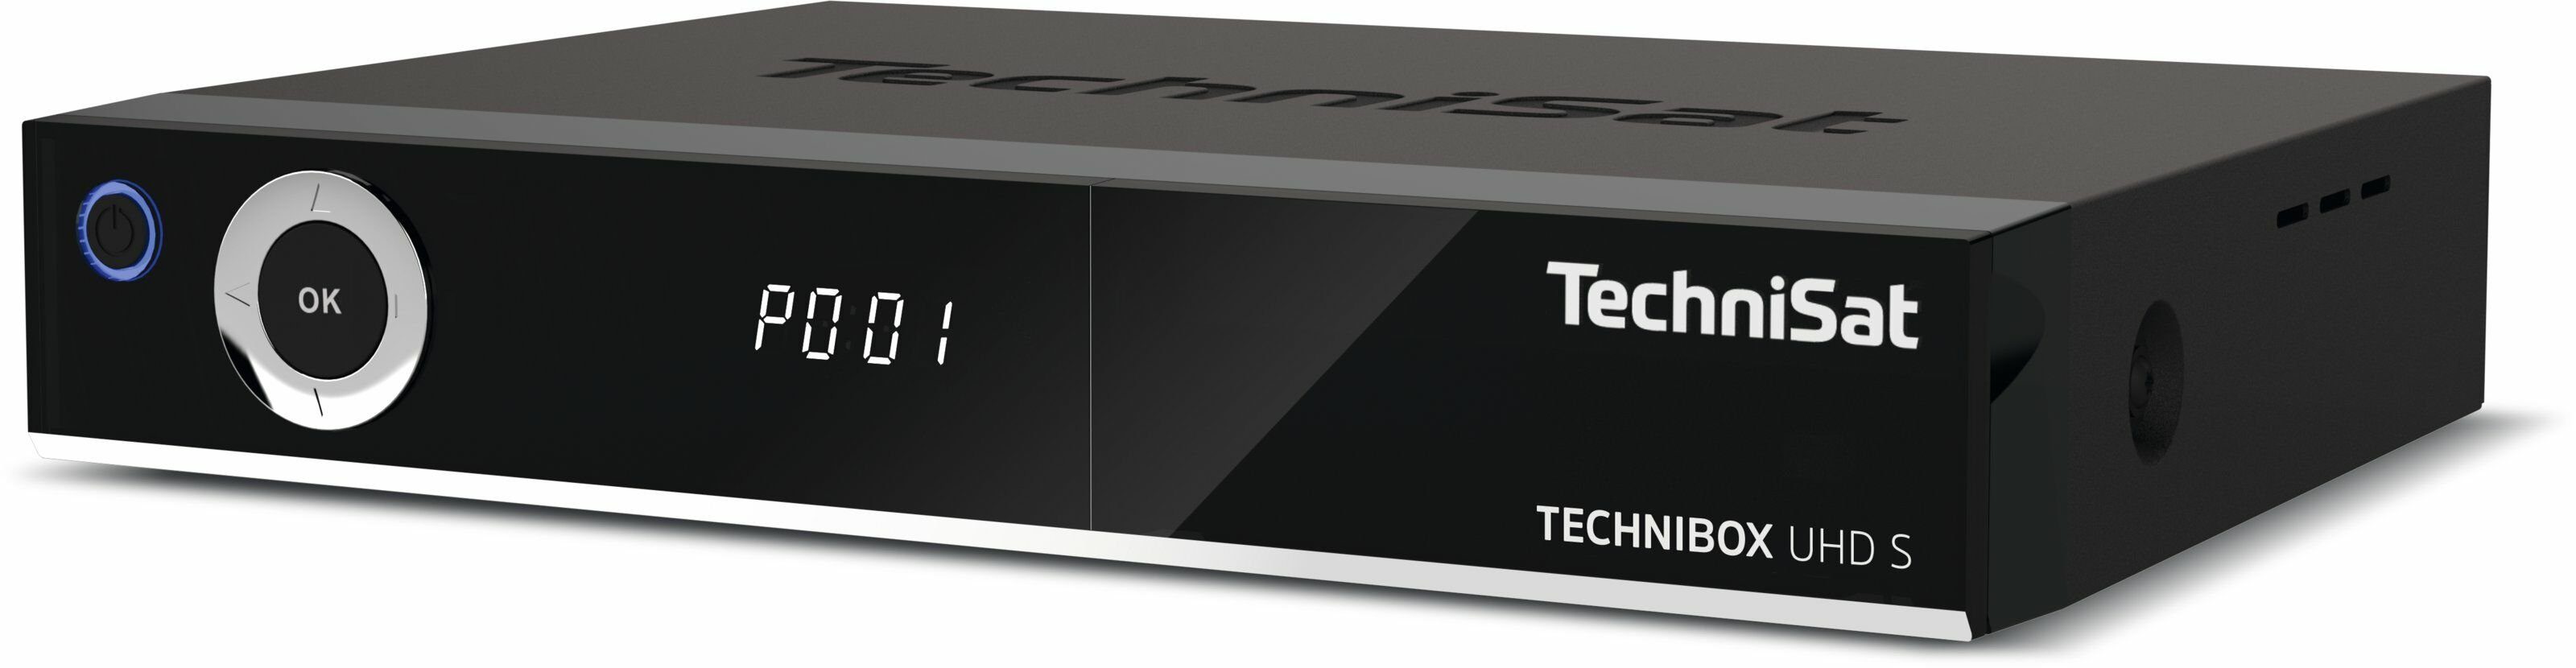 TwinTuner) 3.0, USB CI+, UHD WLAN, TECHNIBOX S TechniSat App-Steuerung, (DVB-S/DVB-S2, SAT-Receiver